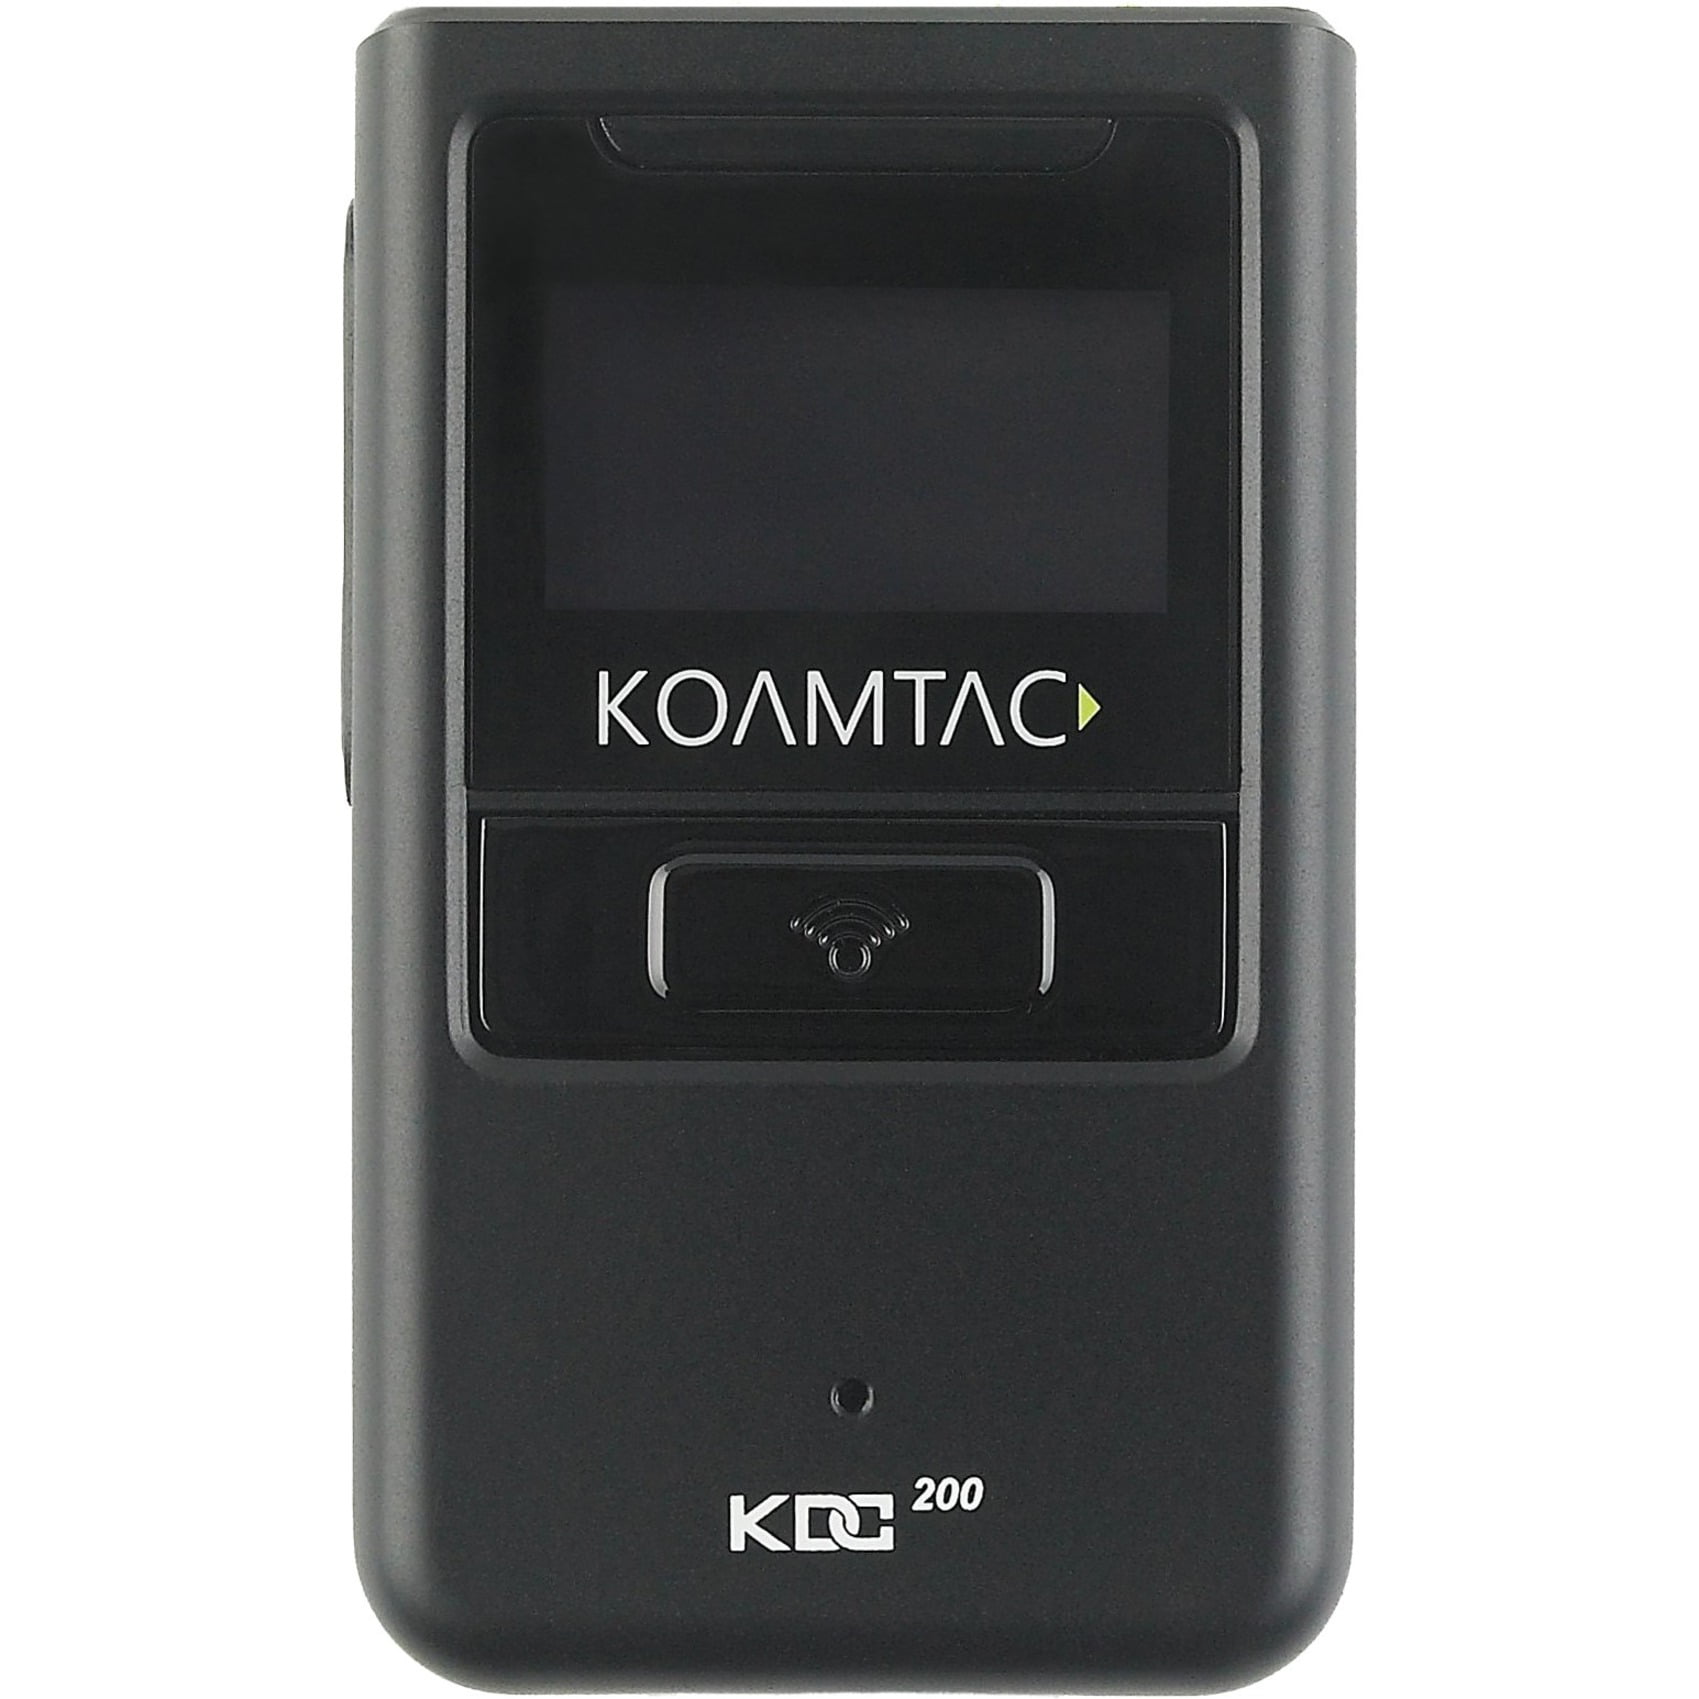 KDC200iM 1D Laser Bluetooth Barcode Scanner Koamtac 